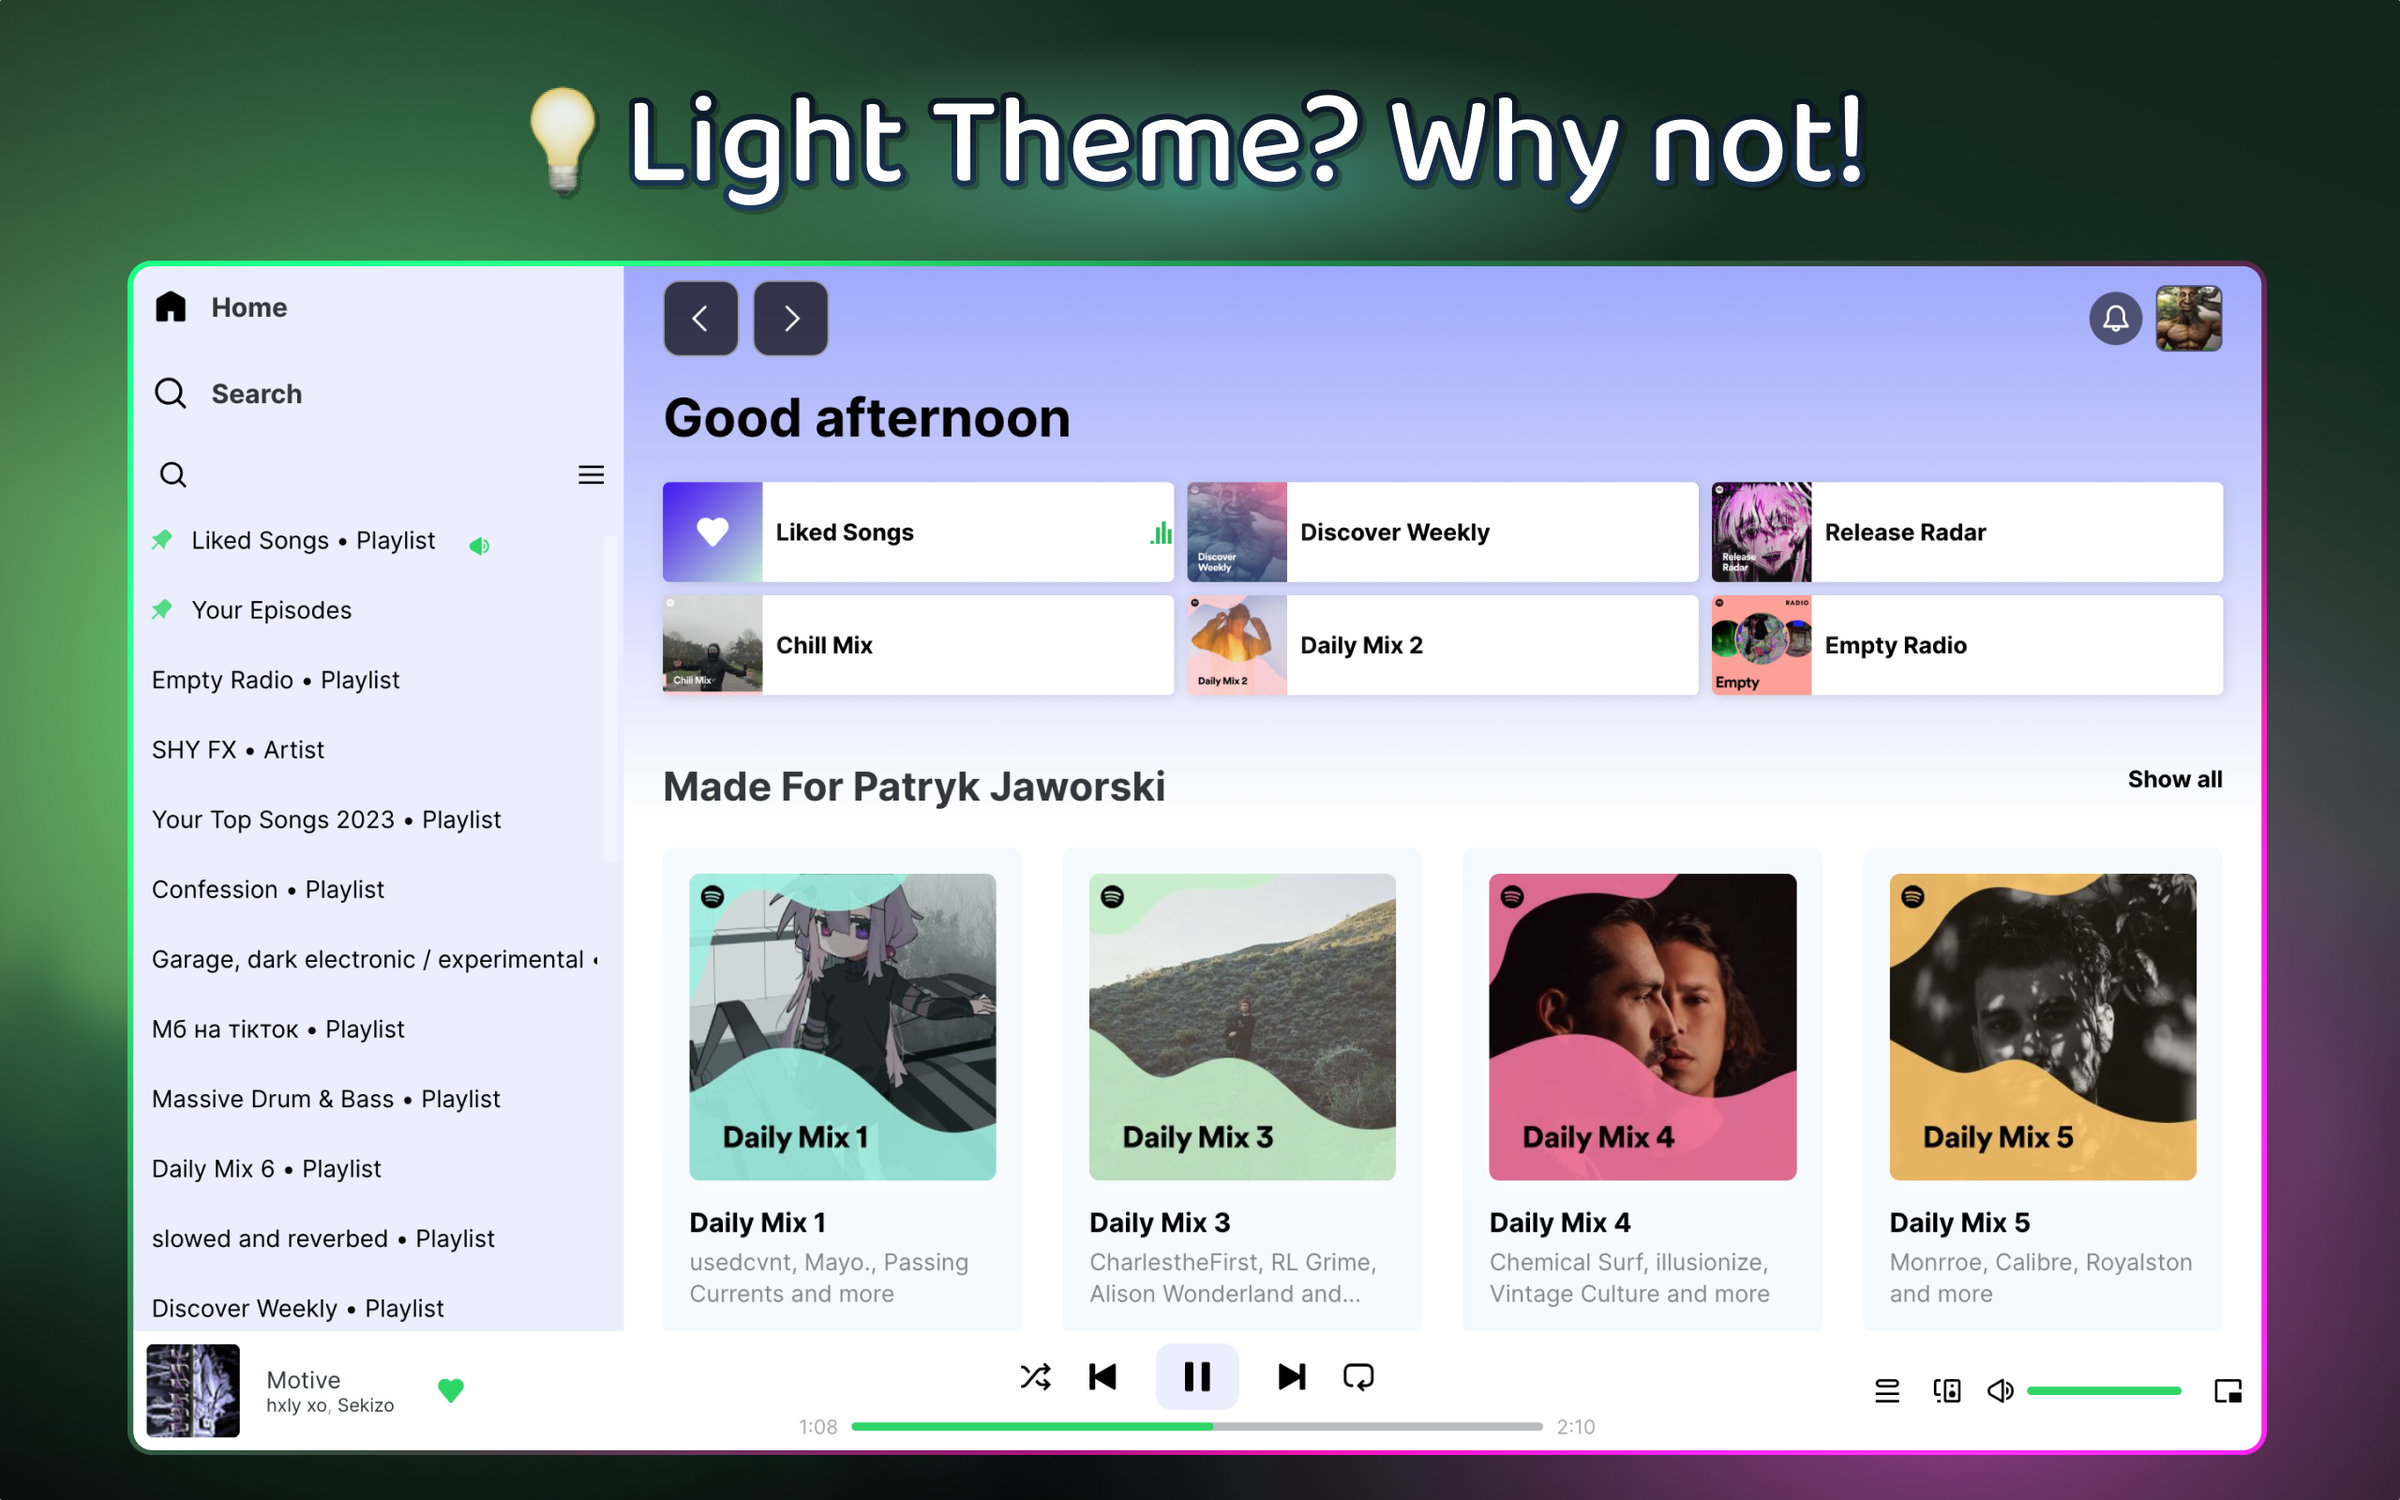 SpoPlus - Edit Spotify Theme & Settings